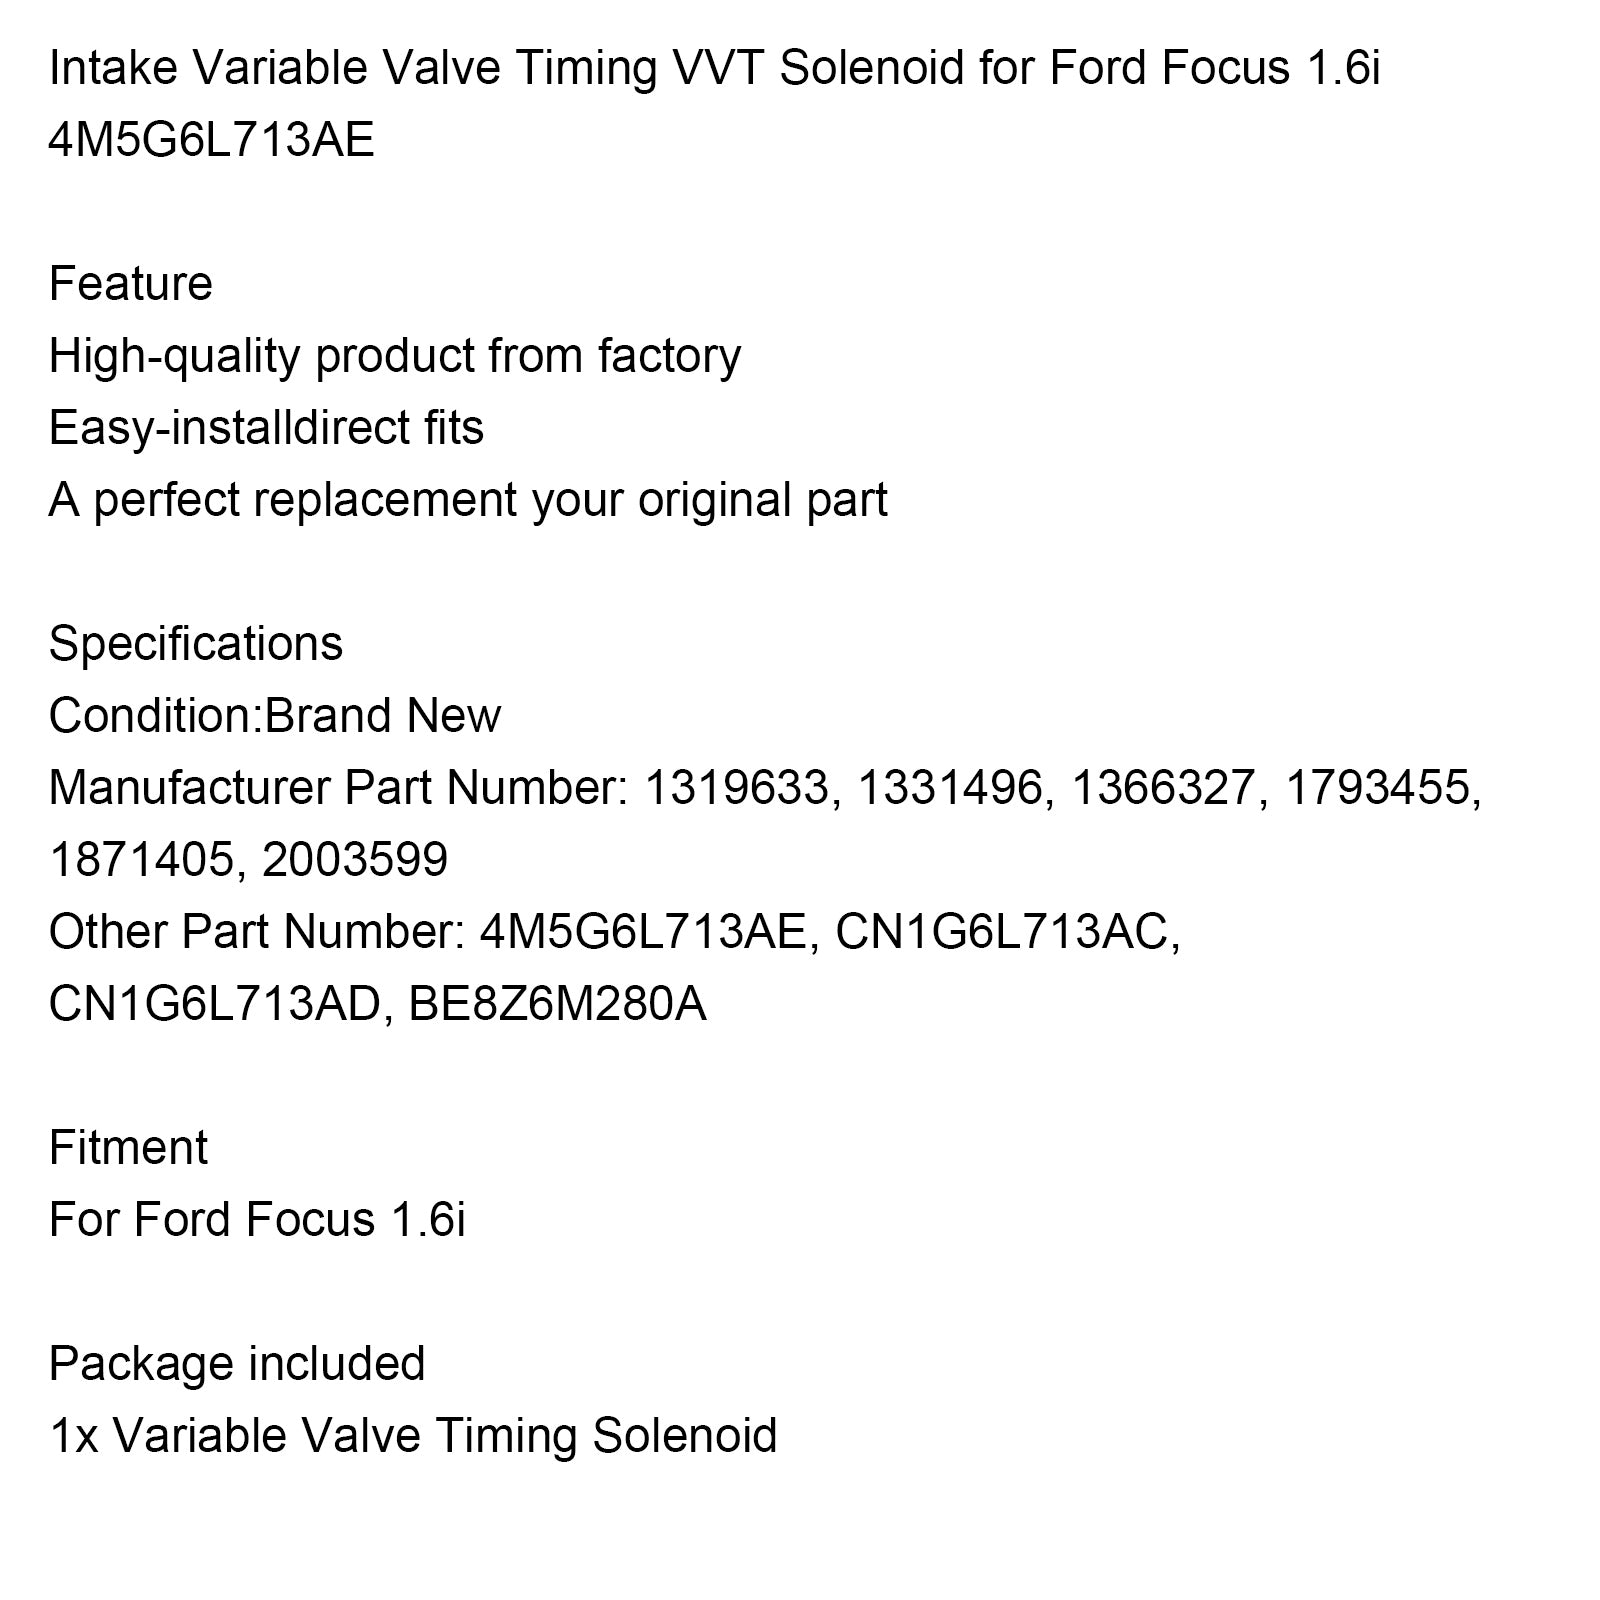 Solenoide variable de sincronización de válvulas VVT de admisión Ford Focus 1.6i 4M5G6L713AE